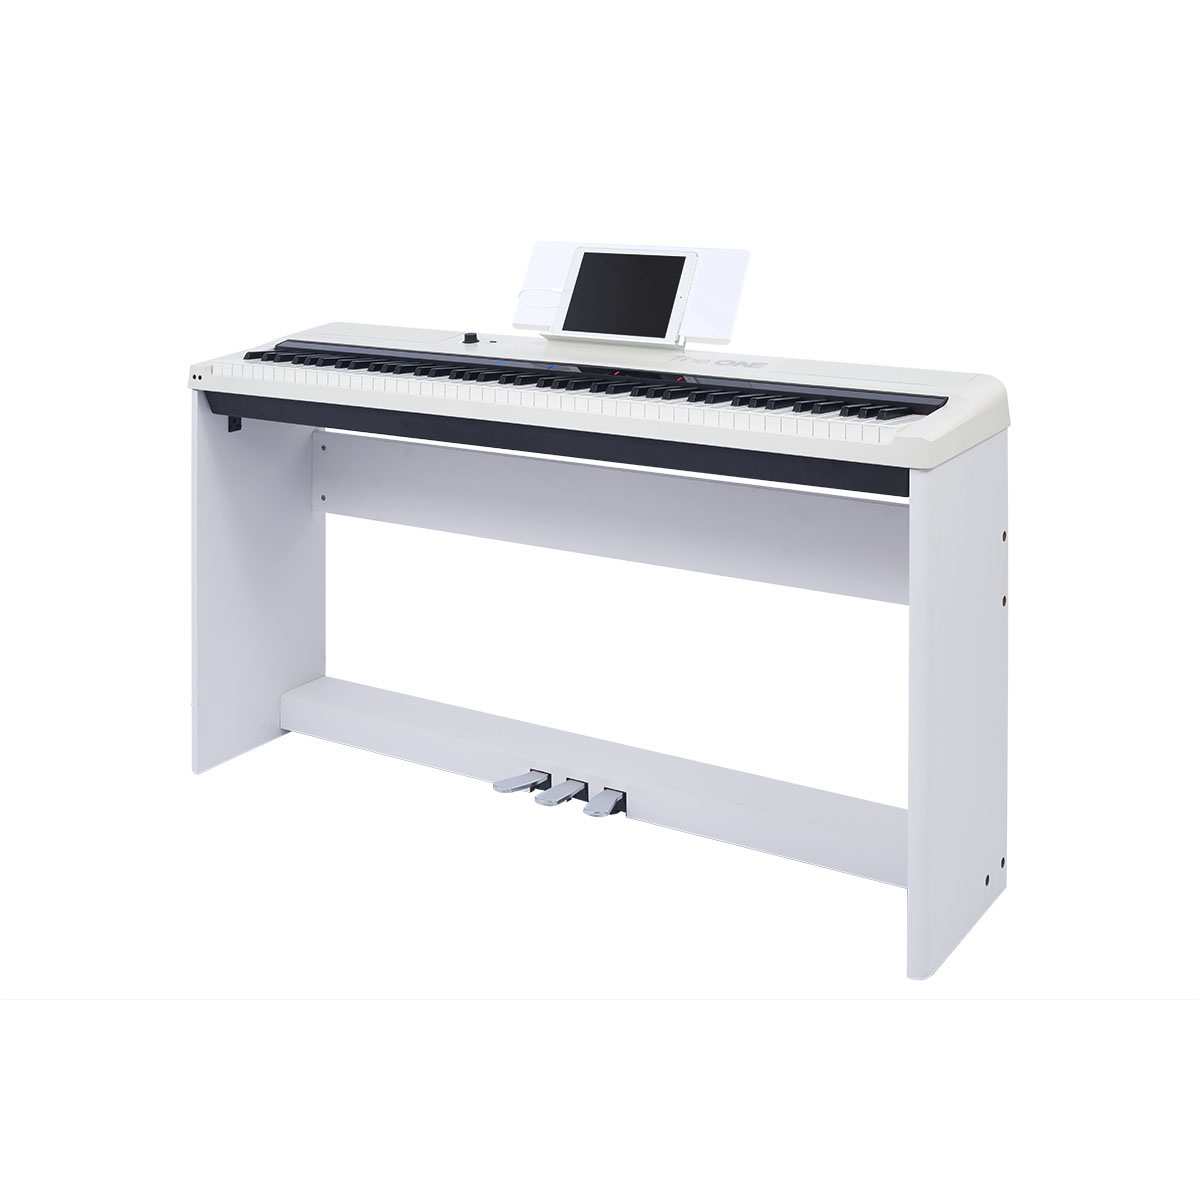 The One 智能鋼琴便携版 數碼琴盤 木琴架 三踏板 白色 香港電視hktvmall 網上購物